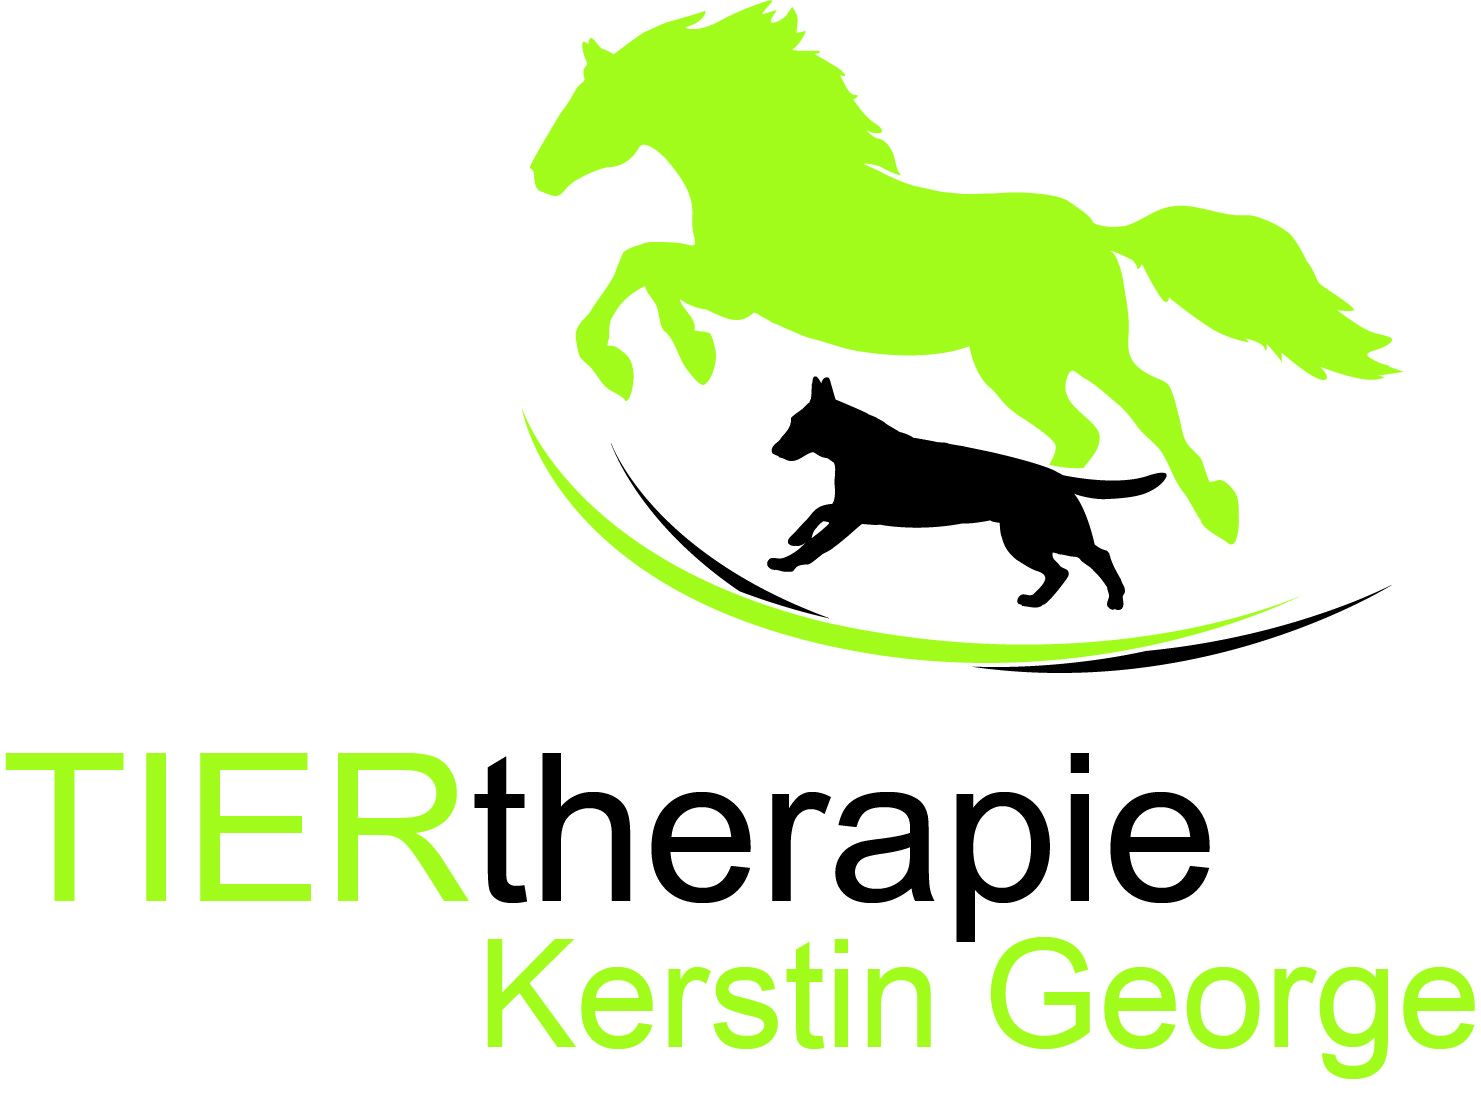 Tiertherapie Kerstin George Tierpraxis für Tierphysiotherapie, Tierosteopathie und Tierakupunktur